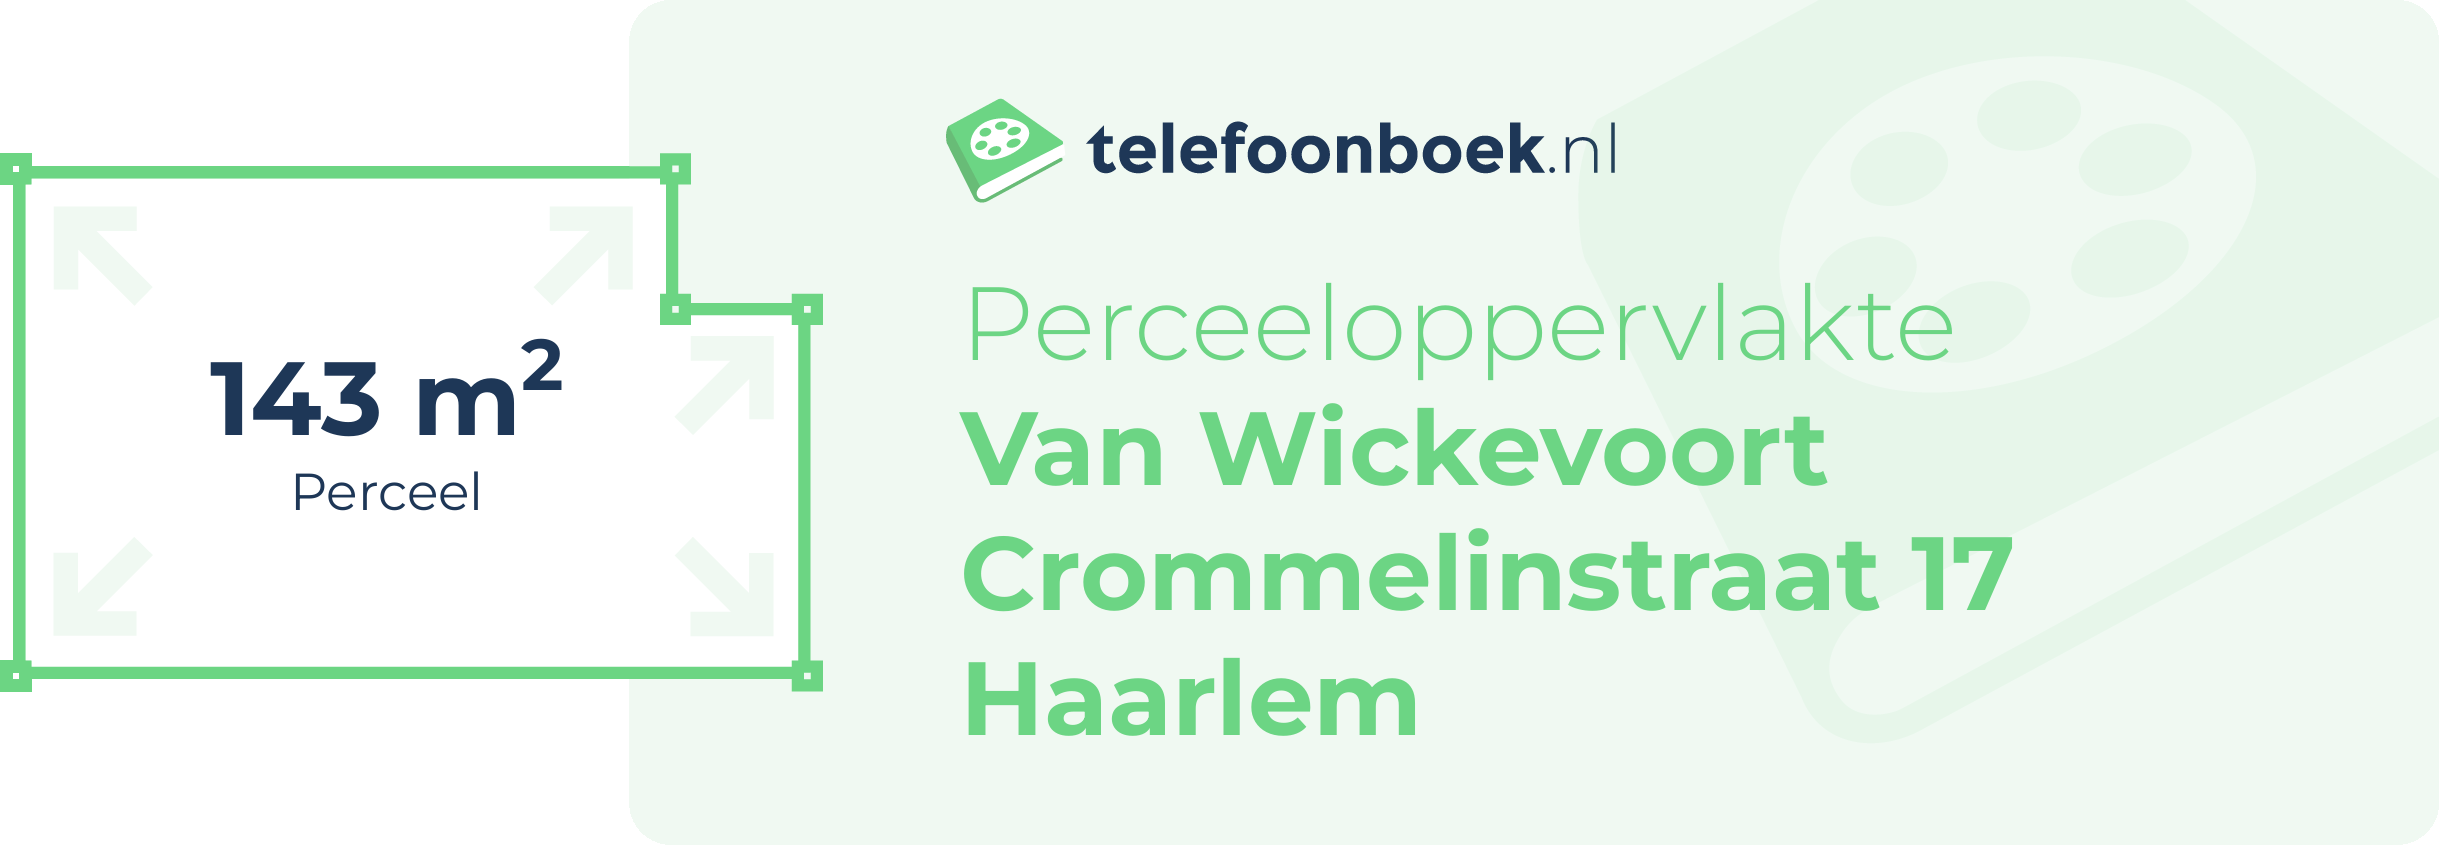 Perceeloppervlakte Van Wickevoort Crommelinstraat 17 Haarlem